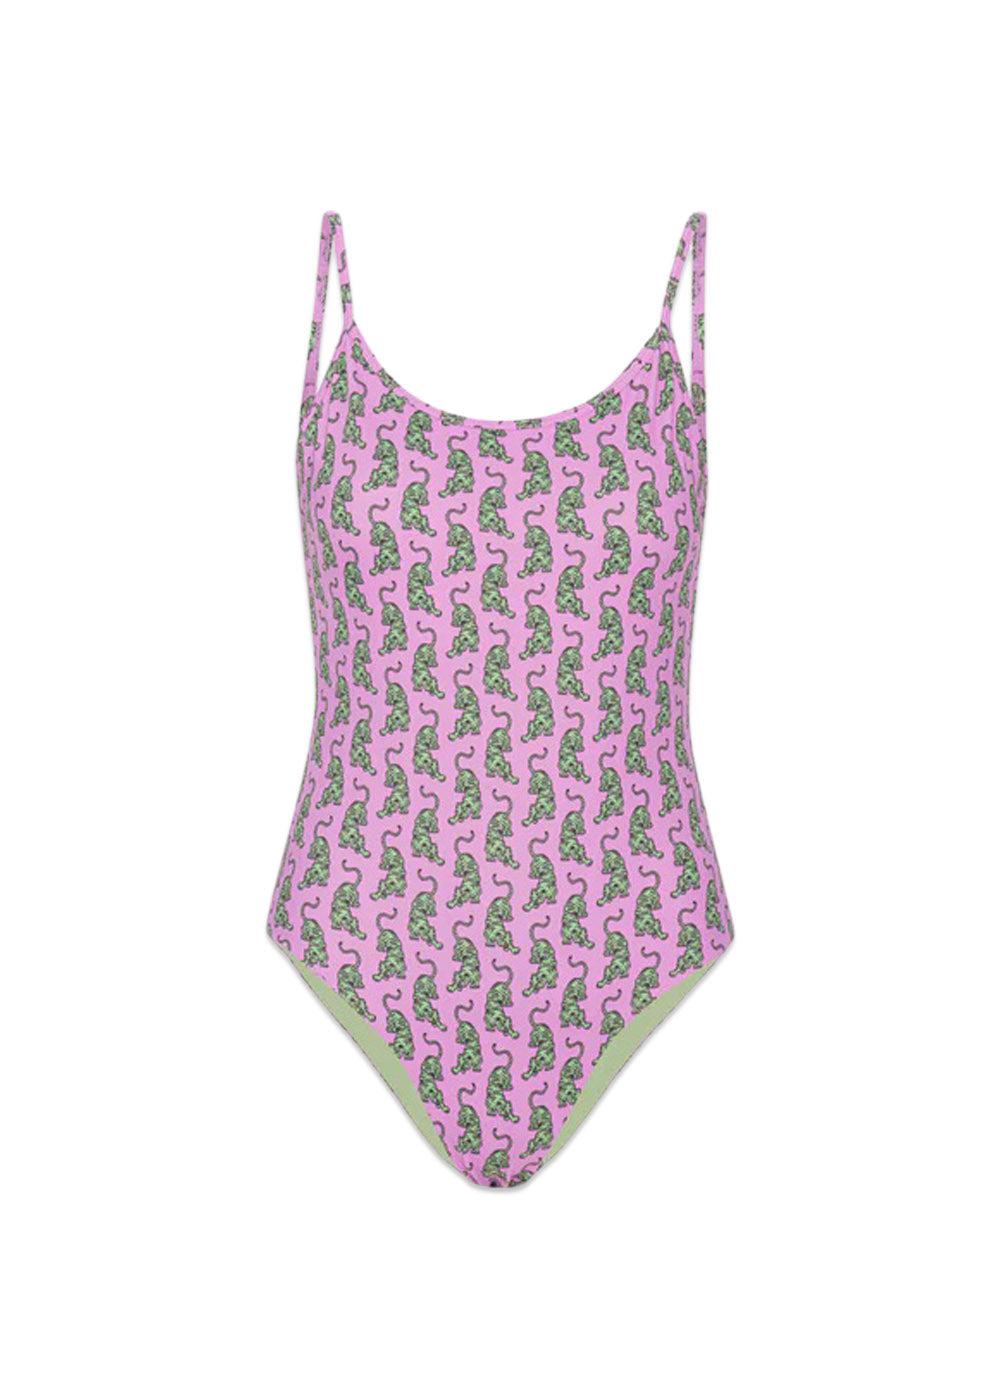 HUNKØN's Wilma Swimsuit - Pink Sneaking Tiger Art Print. Køb badetøj her.